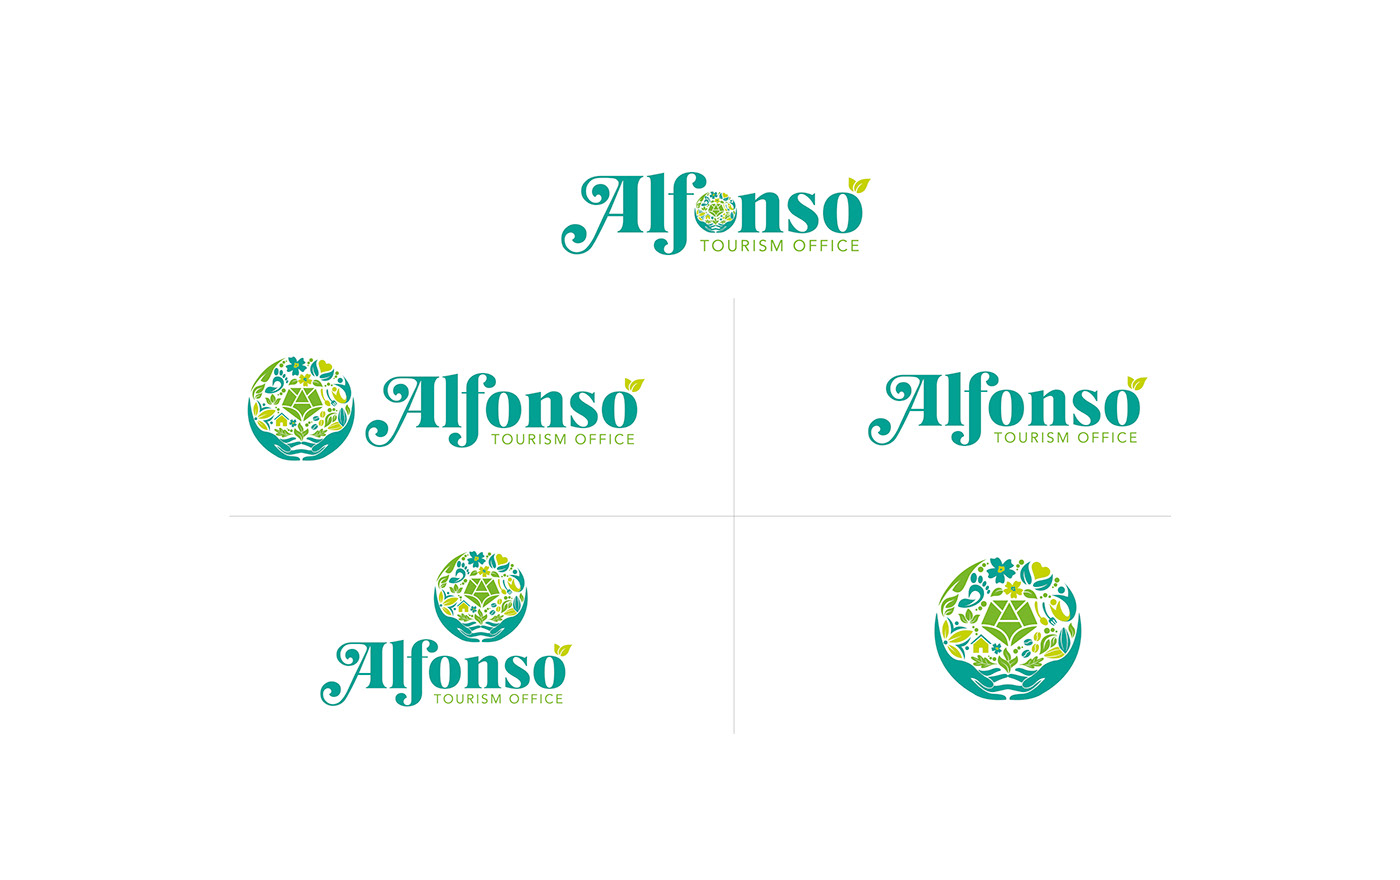 tourism tourism logo philippines tourism branding tourism offce Alfonso cavite Logo Design brand identity branding 